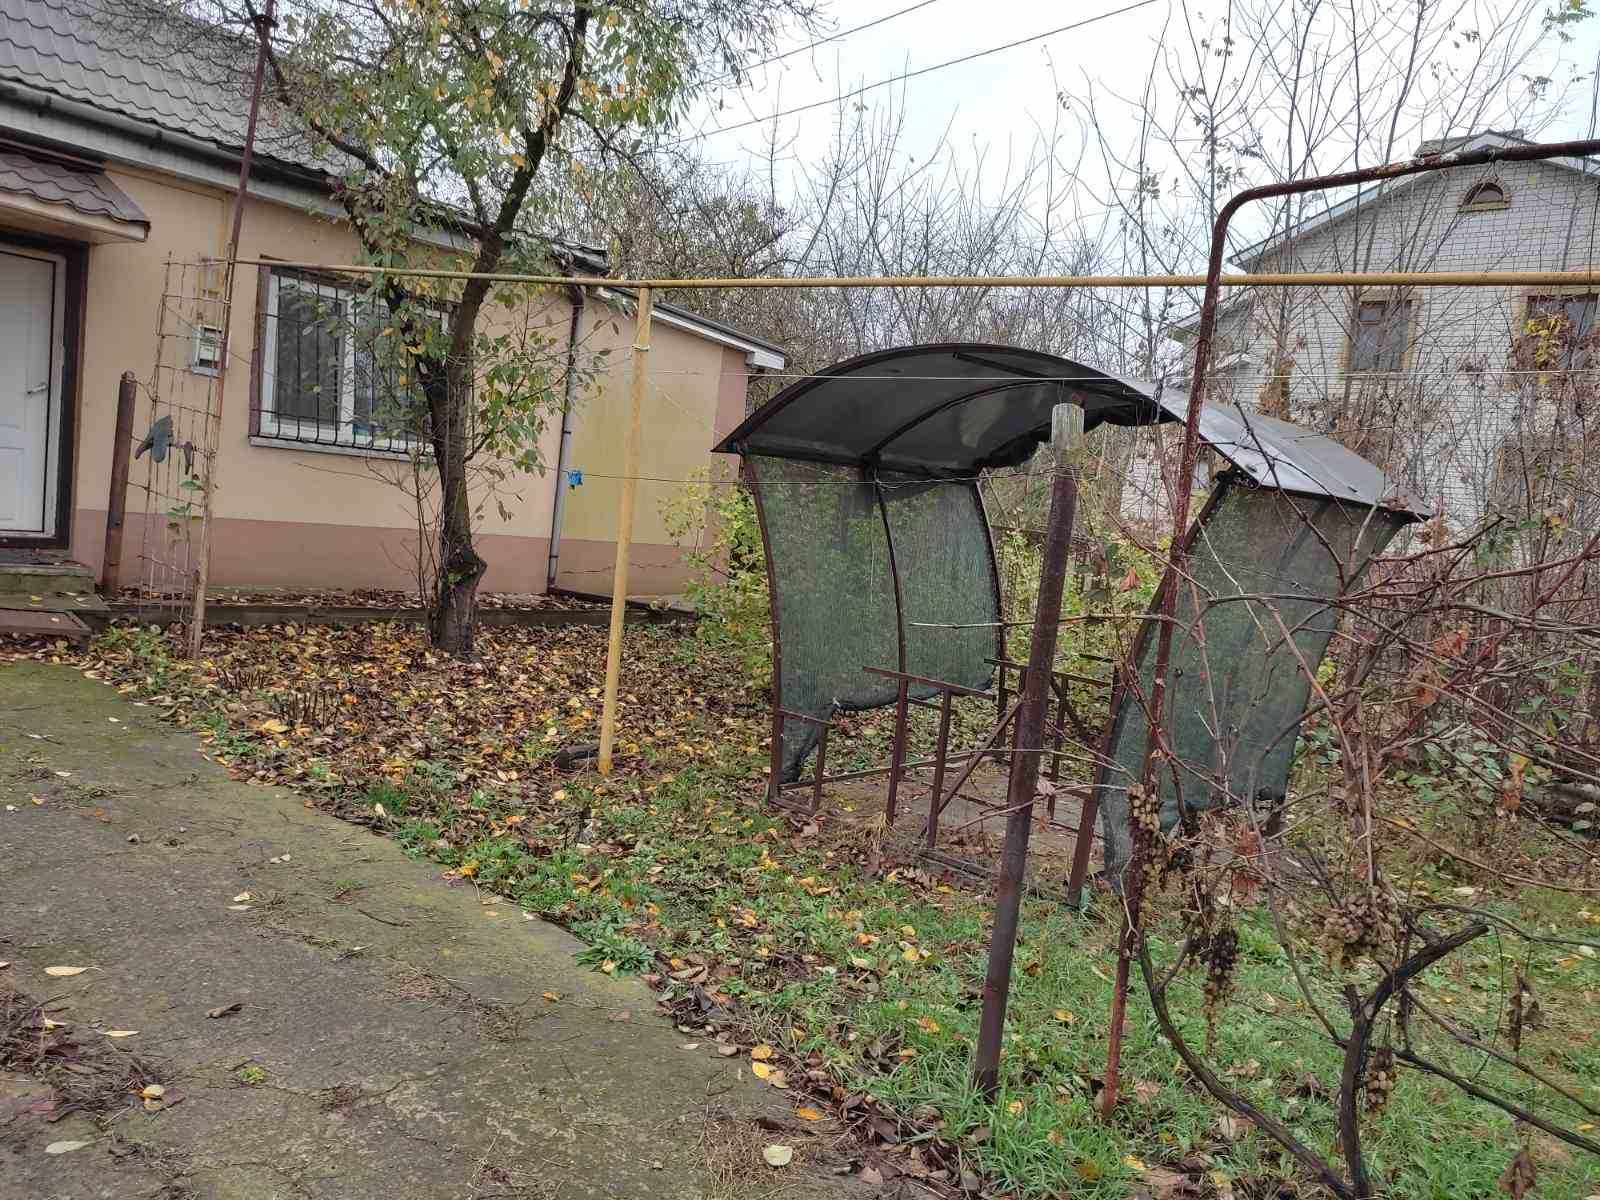 Продам дом в селе Васильевка и 15 соток земли